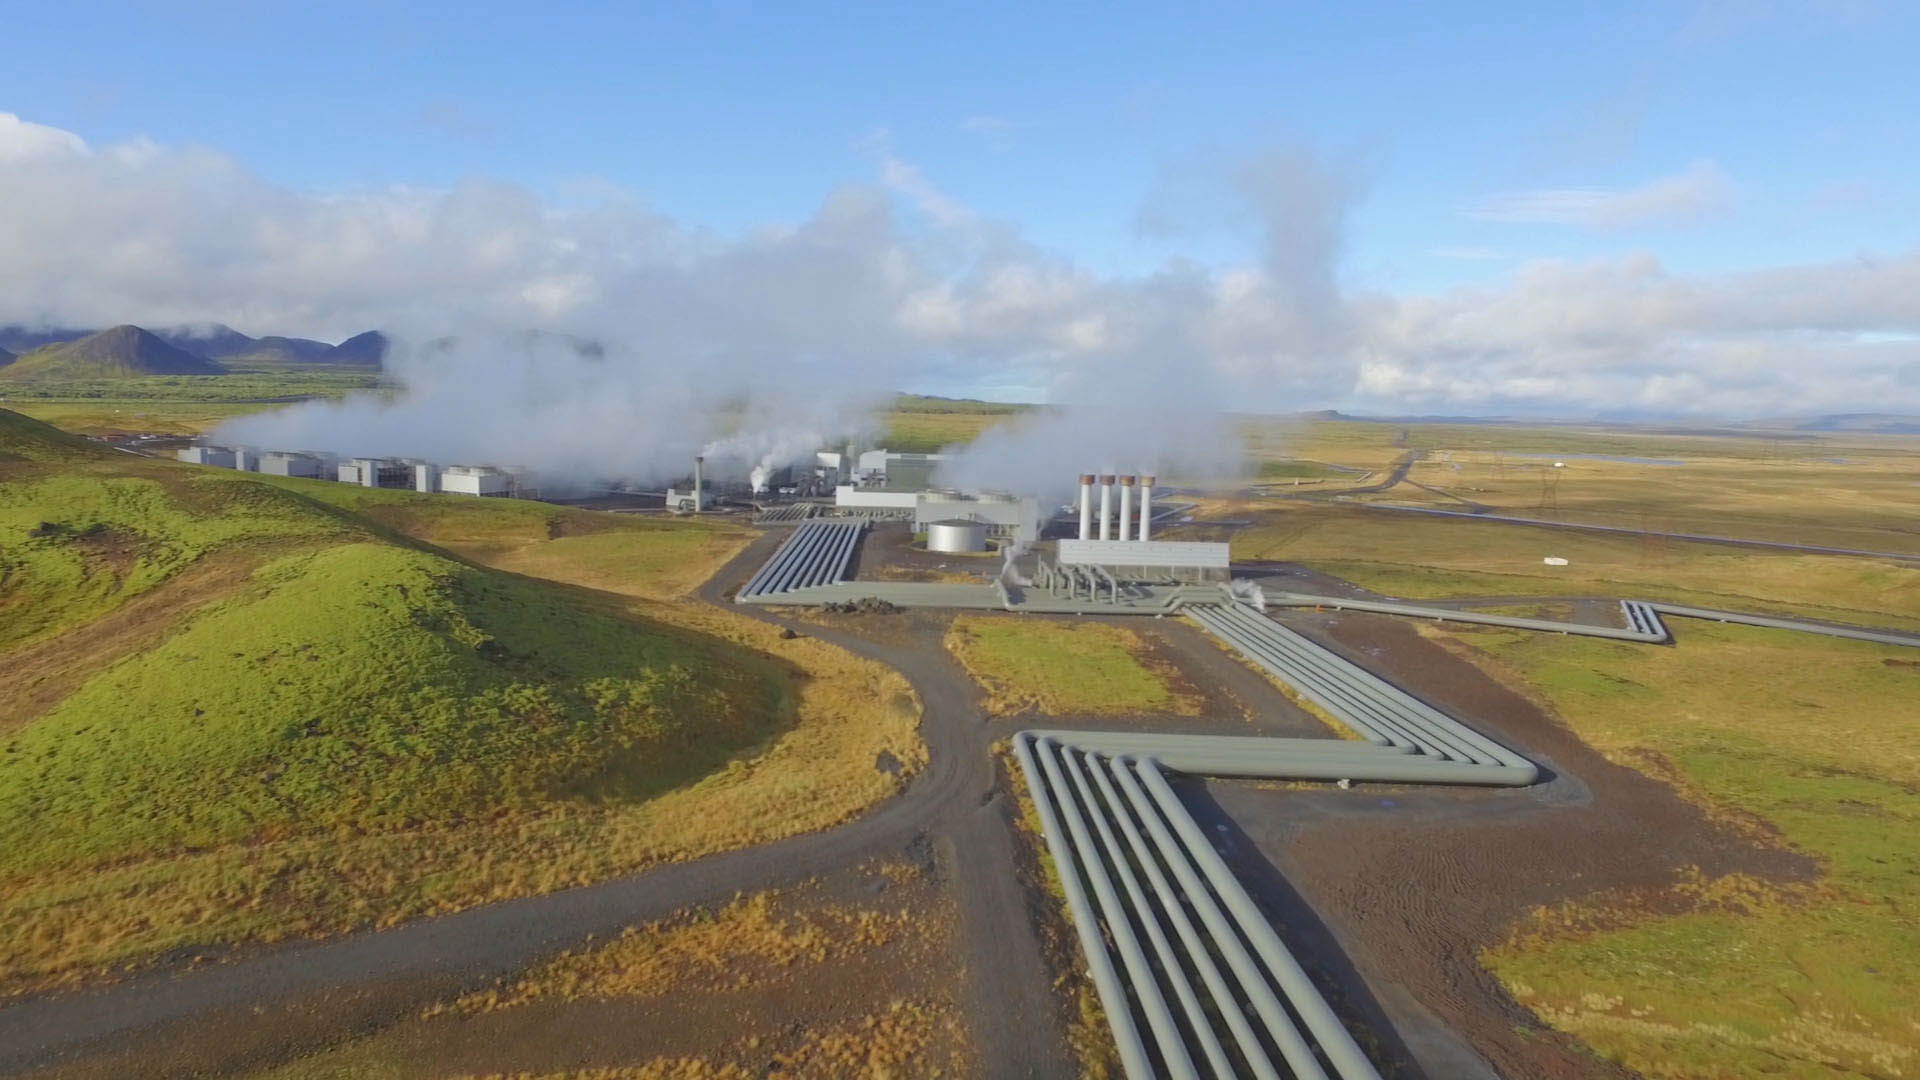 Dampf aus dem Vulkan: So begrüßt das Erdwärmekraftwerk Hellisheidi seine Besucher.